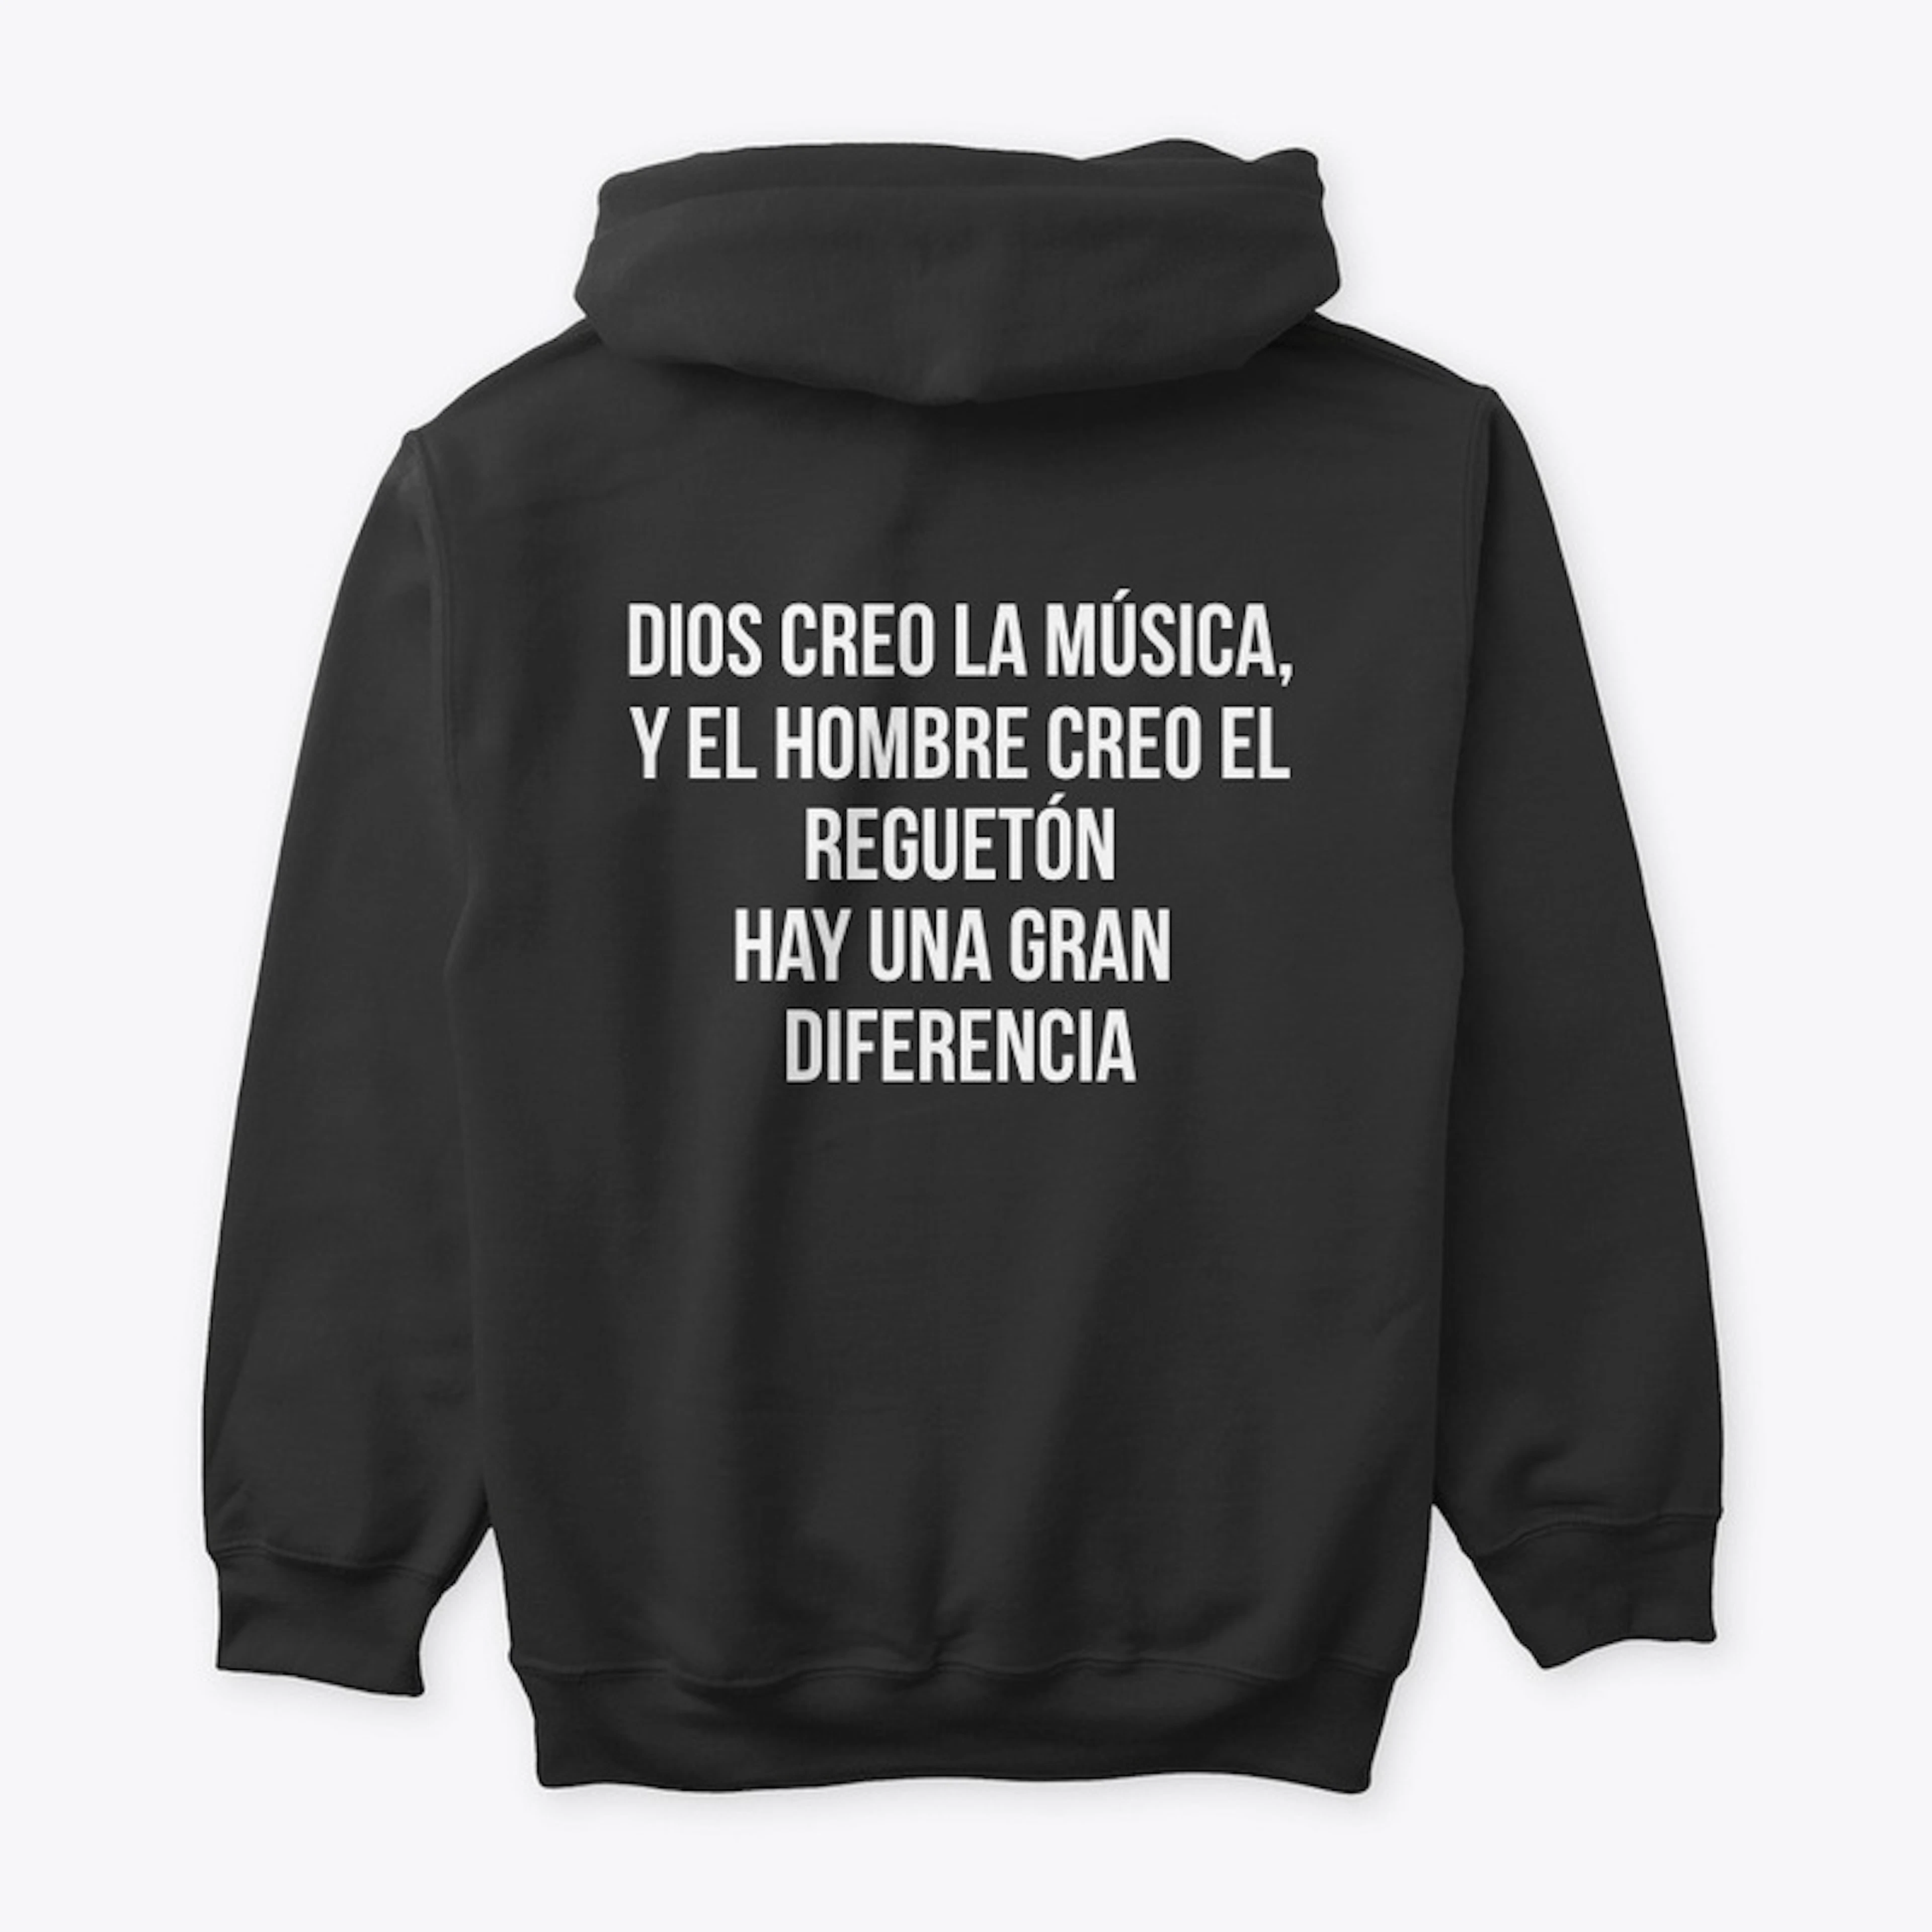 DIOS CREO LA MUSICA